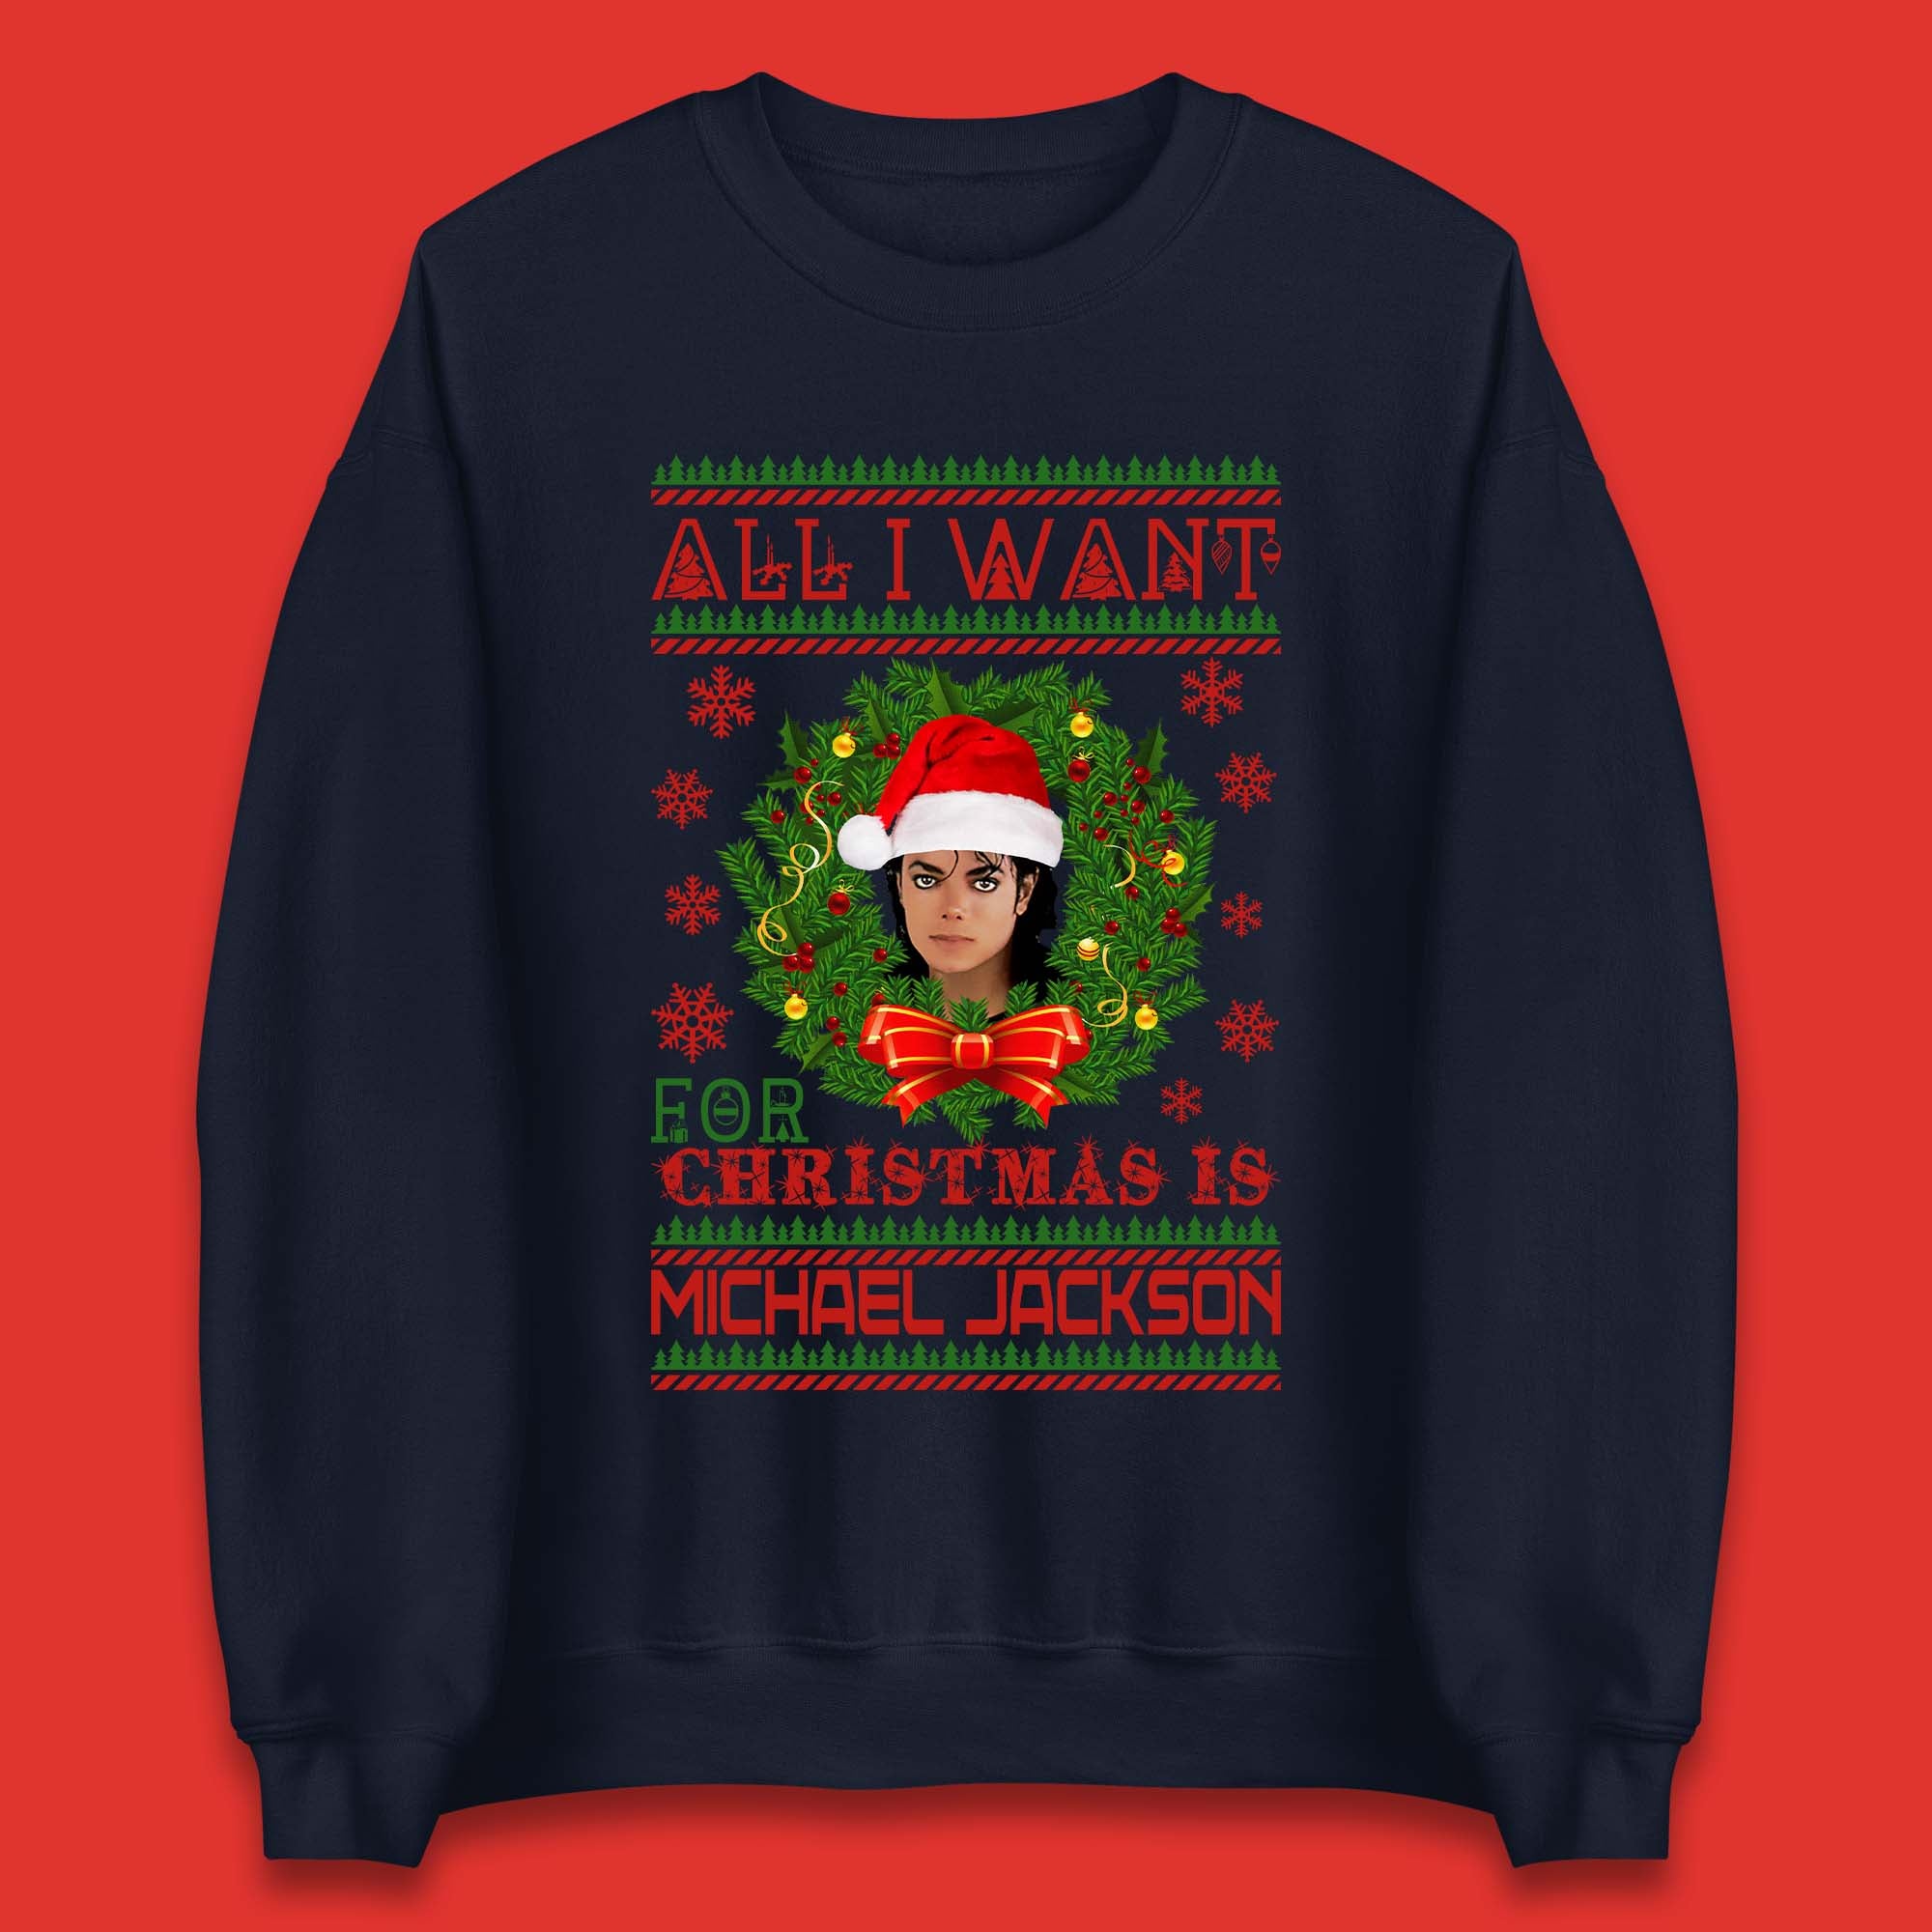 Michael Jackson Christmas Unisex Sweatshirt